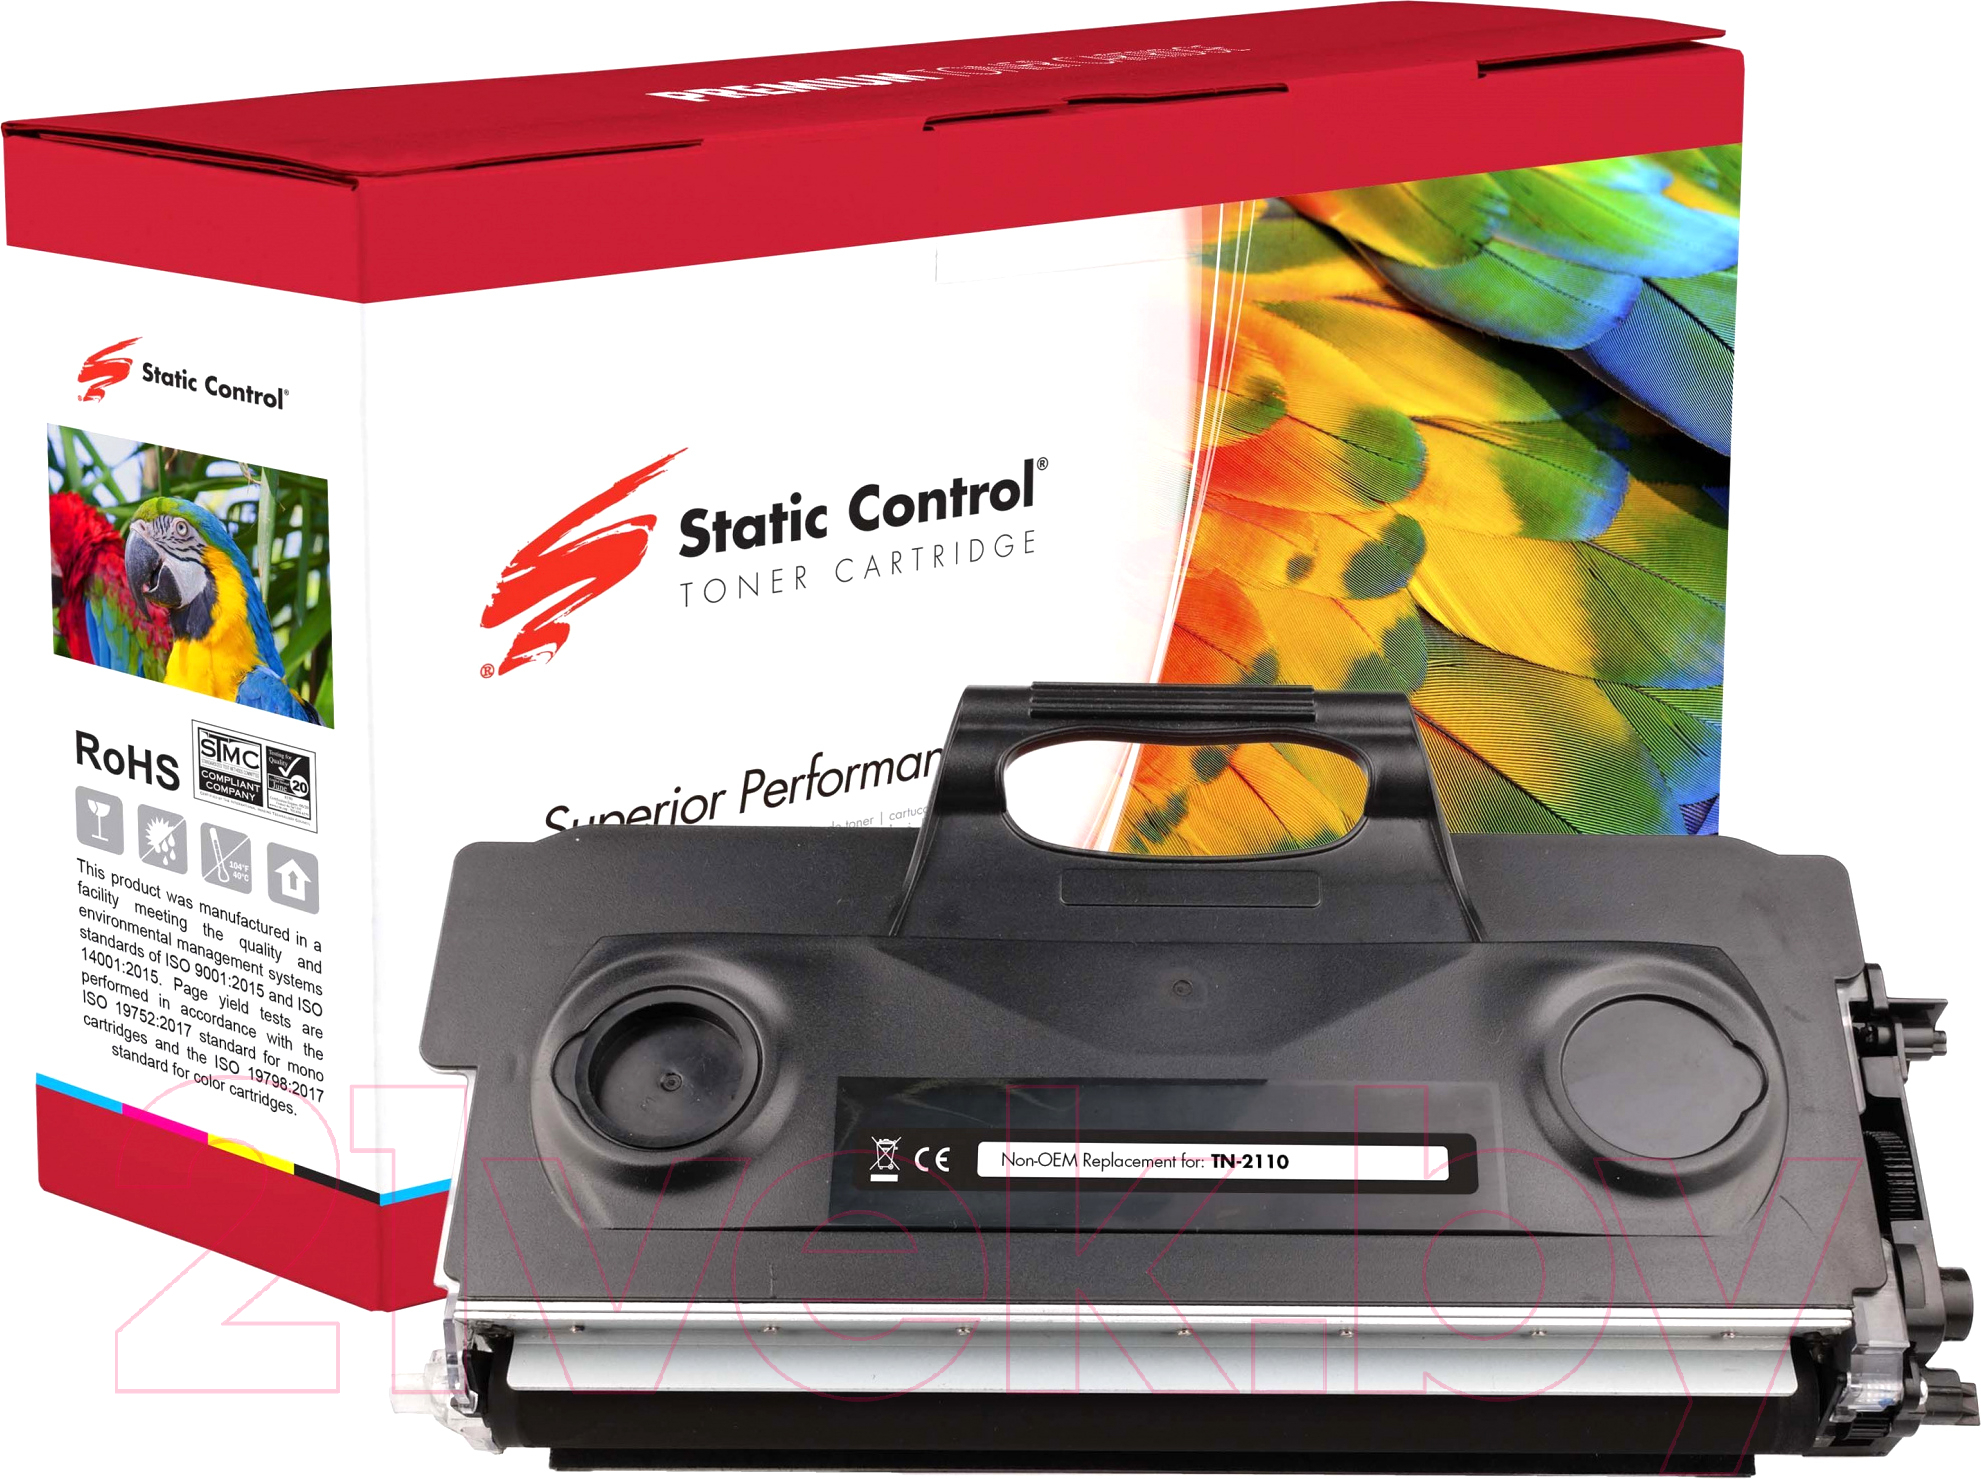 Тонер-картридж Static Control 002-03-QTN2110